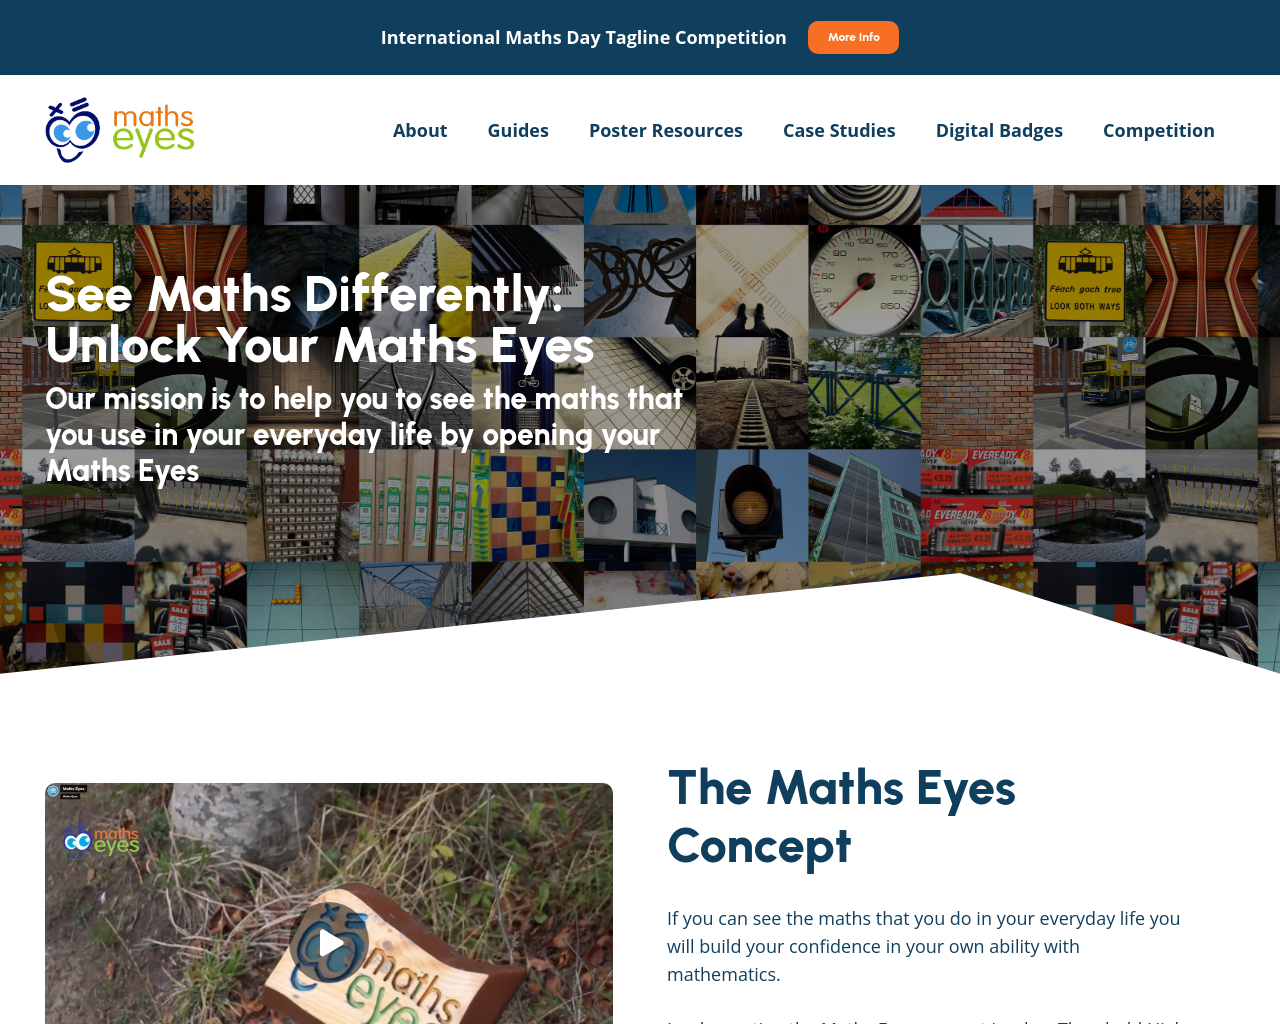 Maths Eyes